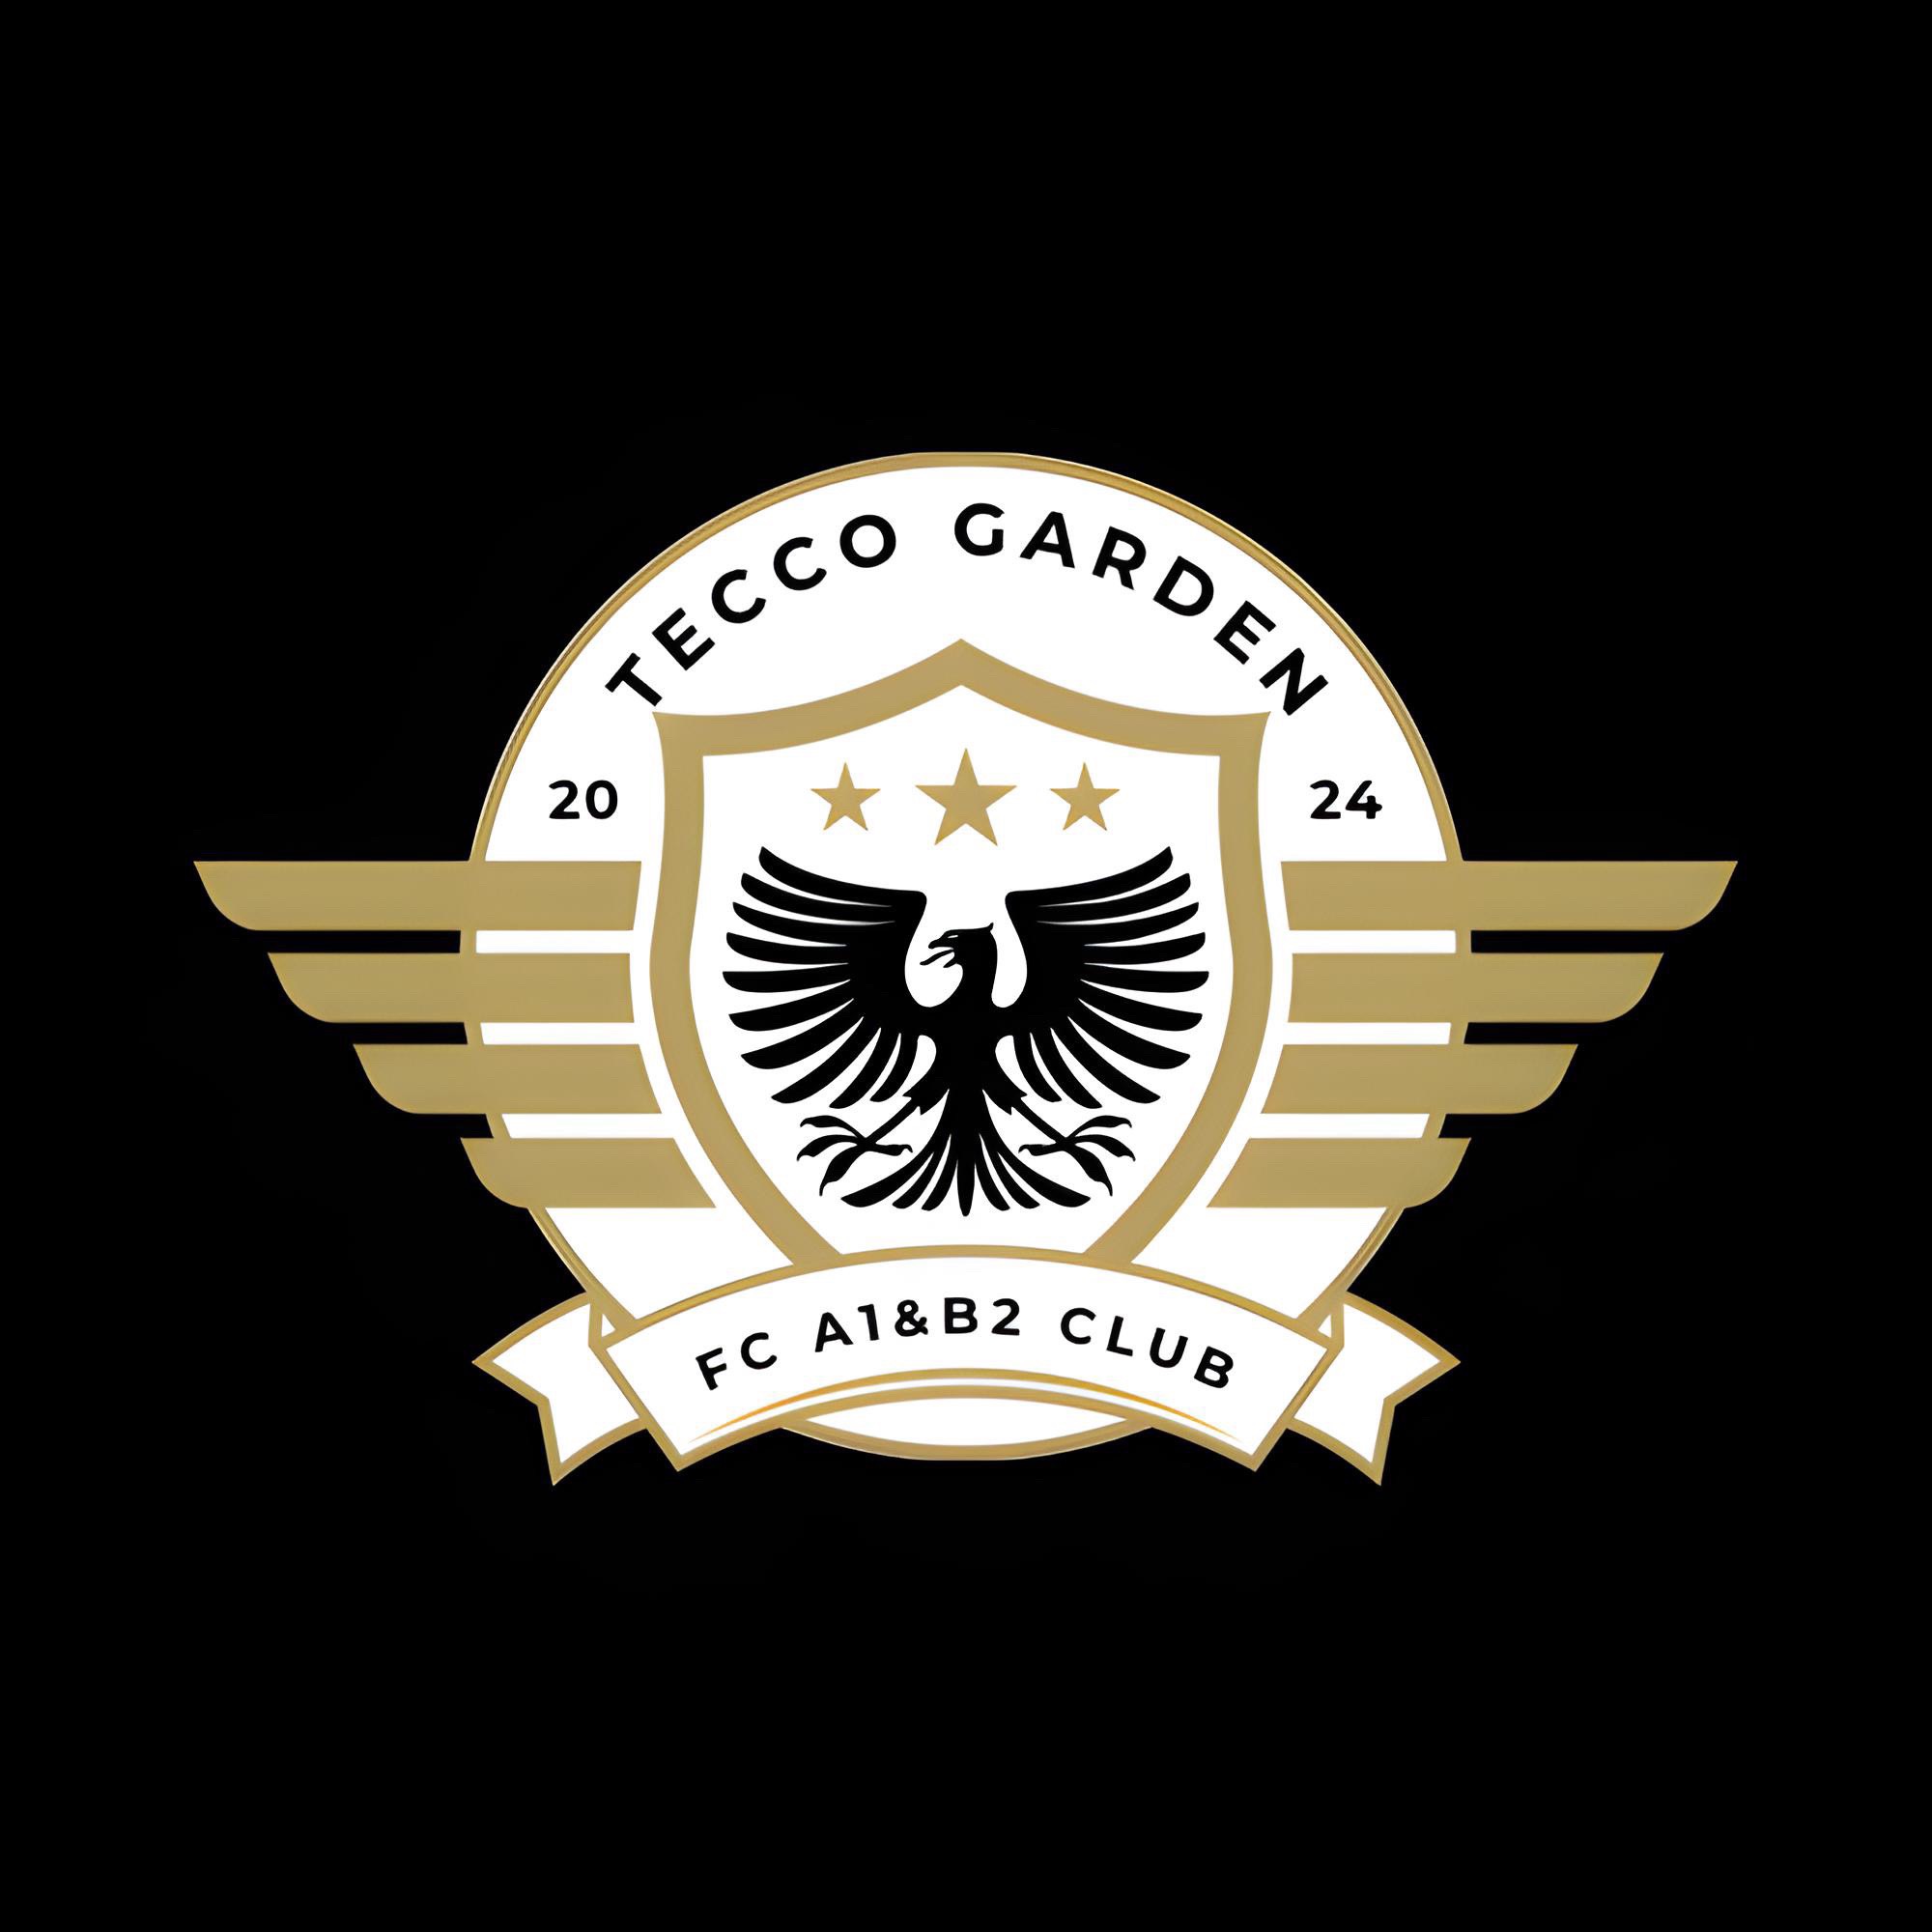 FC Tecco Garden A1